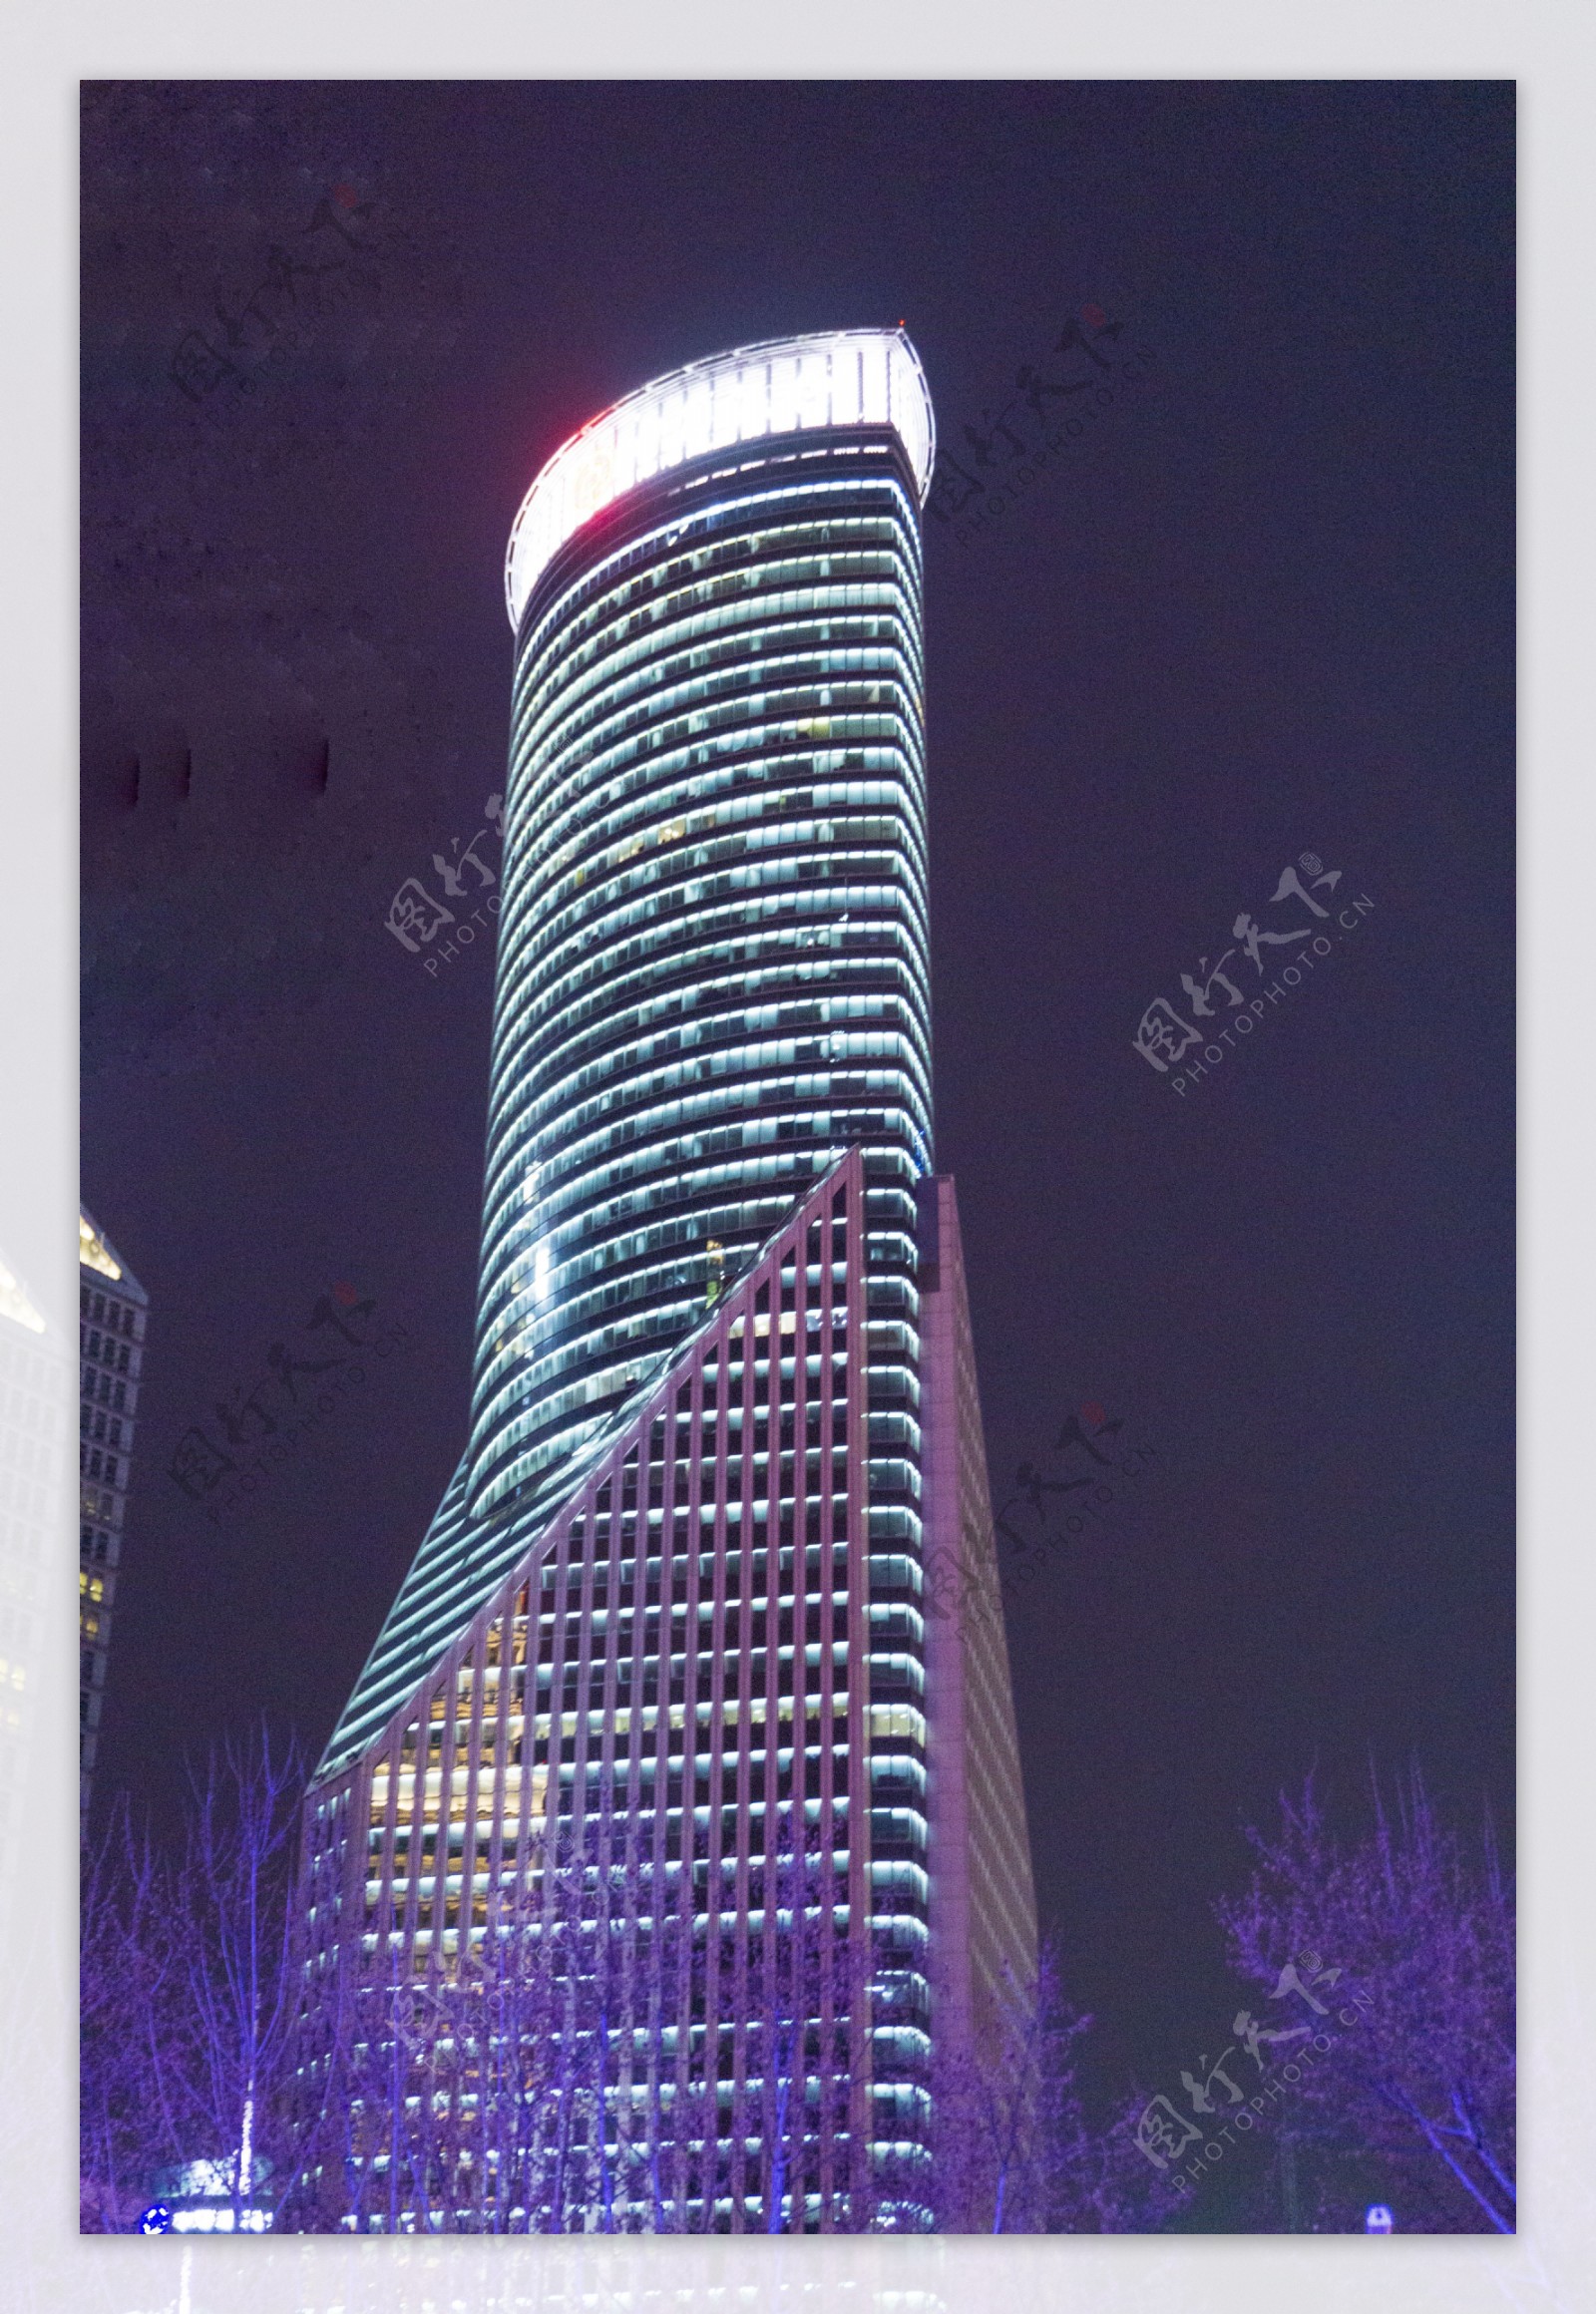 上海金茂大厦建筑夜景摄影